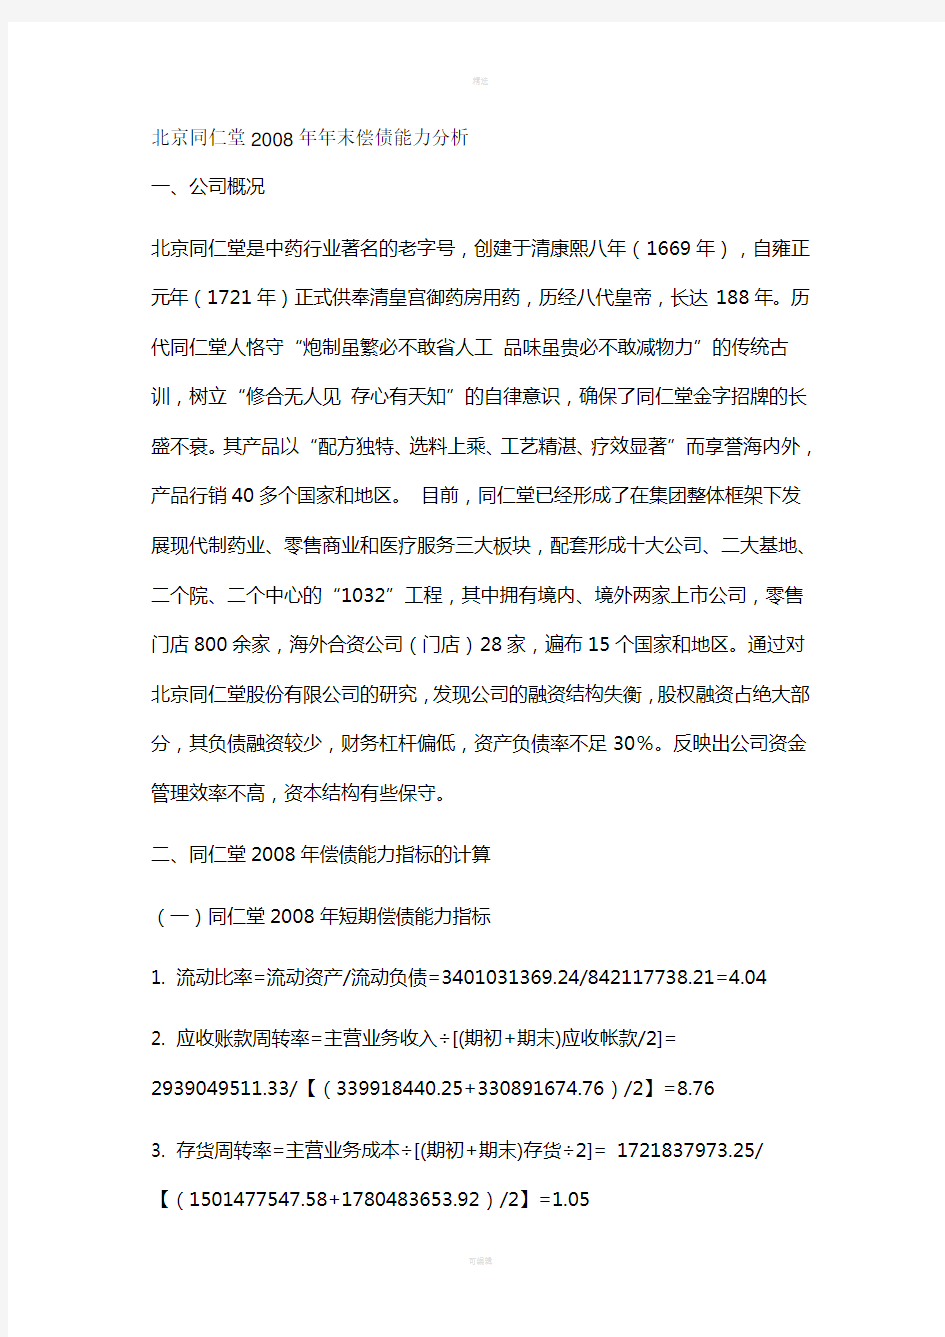 中央电大形成性测评系统财务报表分析作业一北京同仁堂2008年年末偿债能力分析